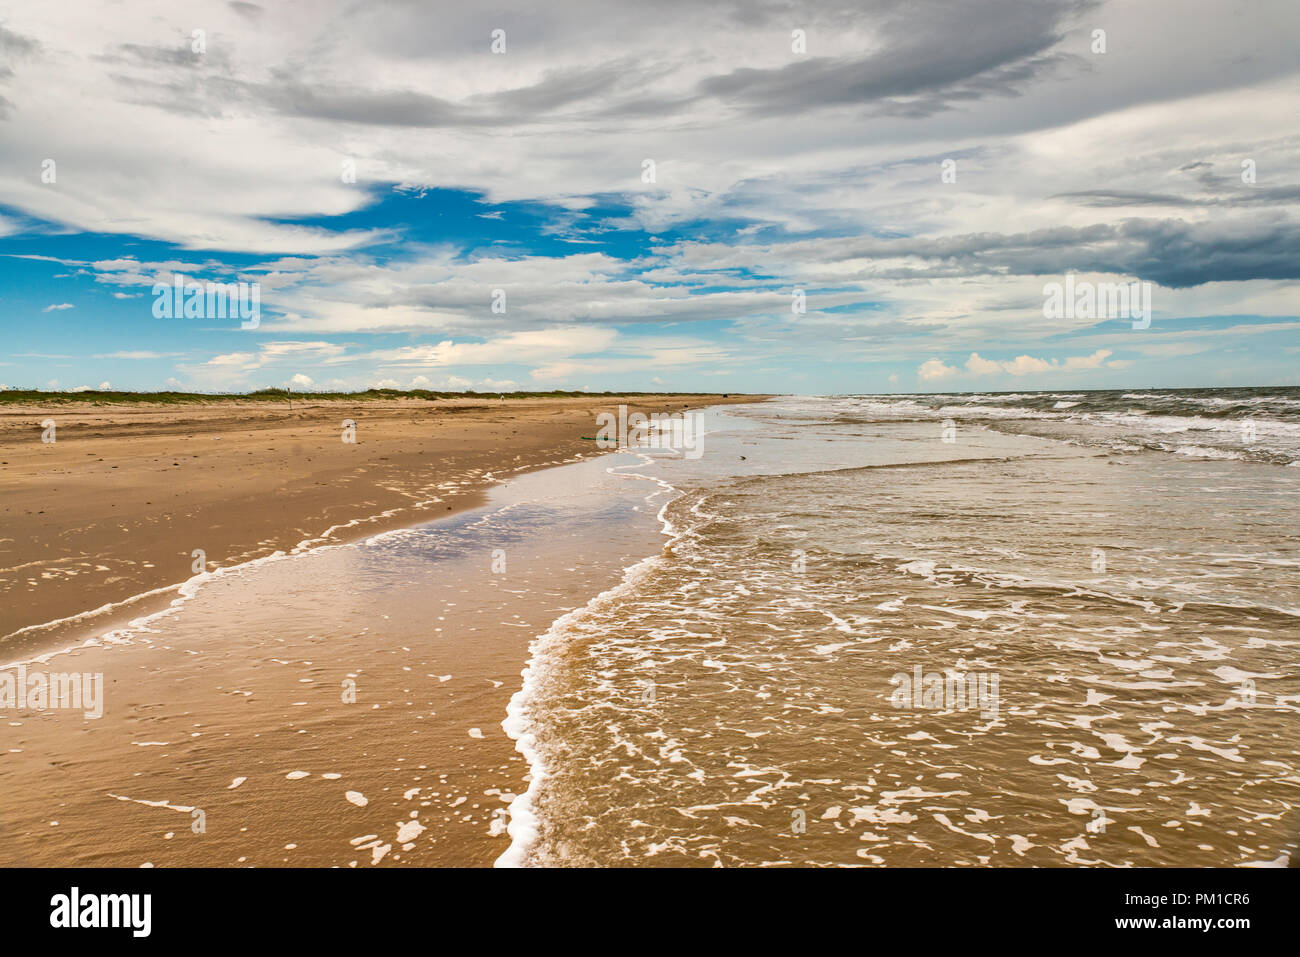 Strand am Golf von Mexiko, in der Nähe von Matagorda, Texas, USA Stockfoto